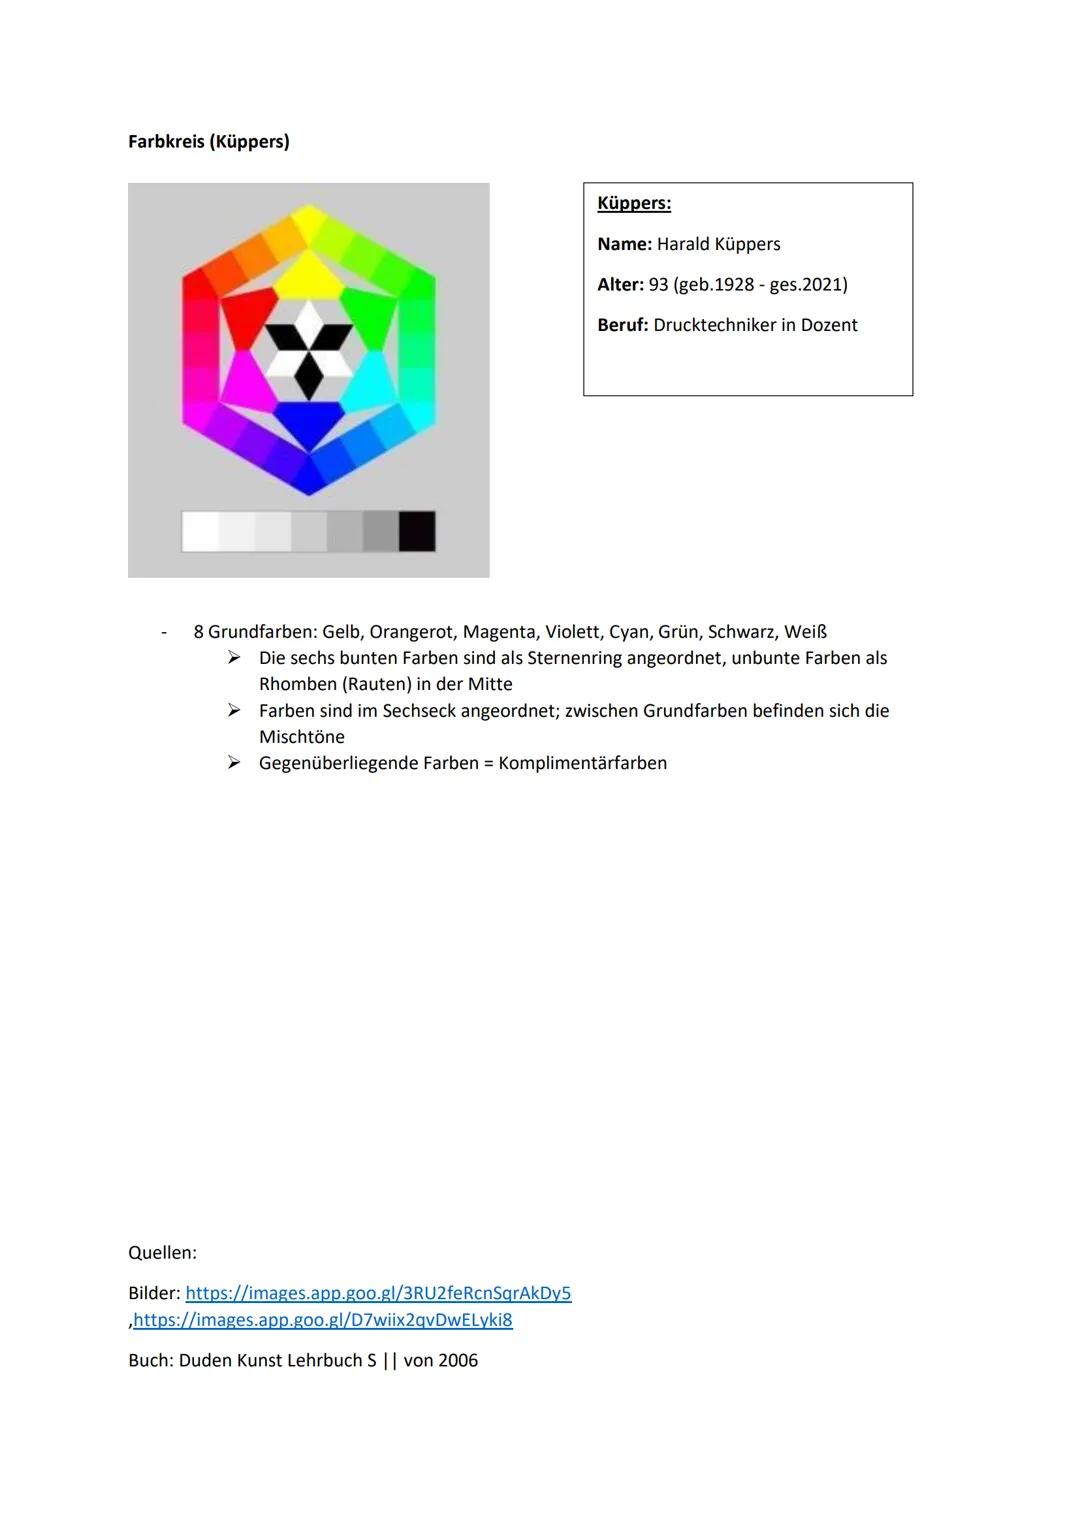 Farbenlehre Itten und Küppers
Der zwölfteilige Farbkreis (Itten):
Besteht aus 3 Grundfarben
➤ Blau, Gelb, Rot (Mitte des Kreises)
Seiten des